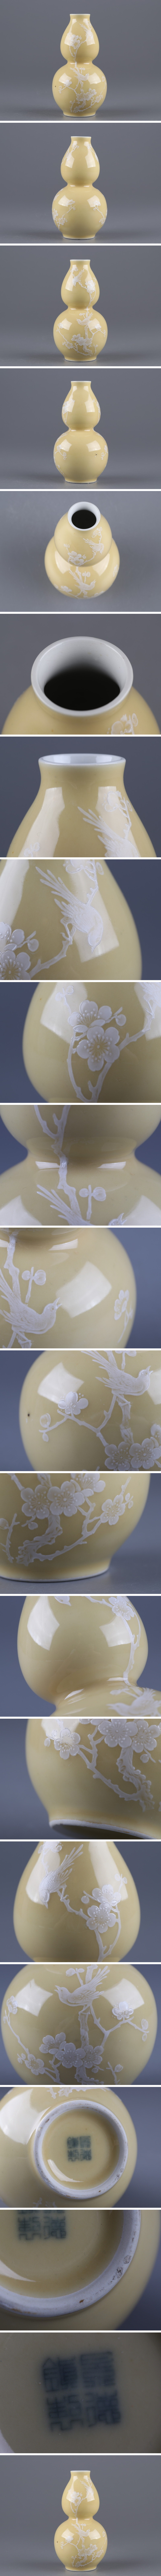 人気定番格安中国古玩 唐物 景徳鎮製 款 瓢箪形 花瓶 時代物 極上品 初だし品 4769 清